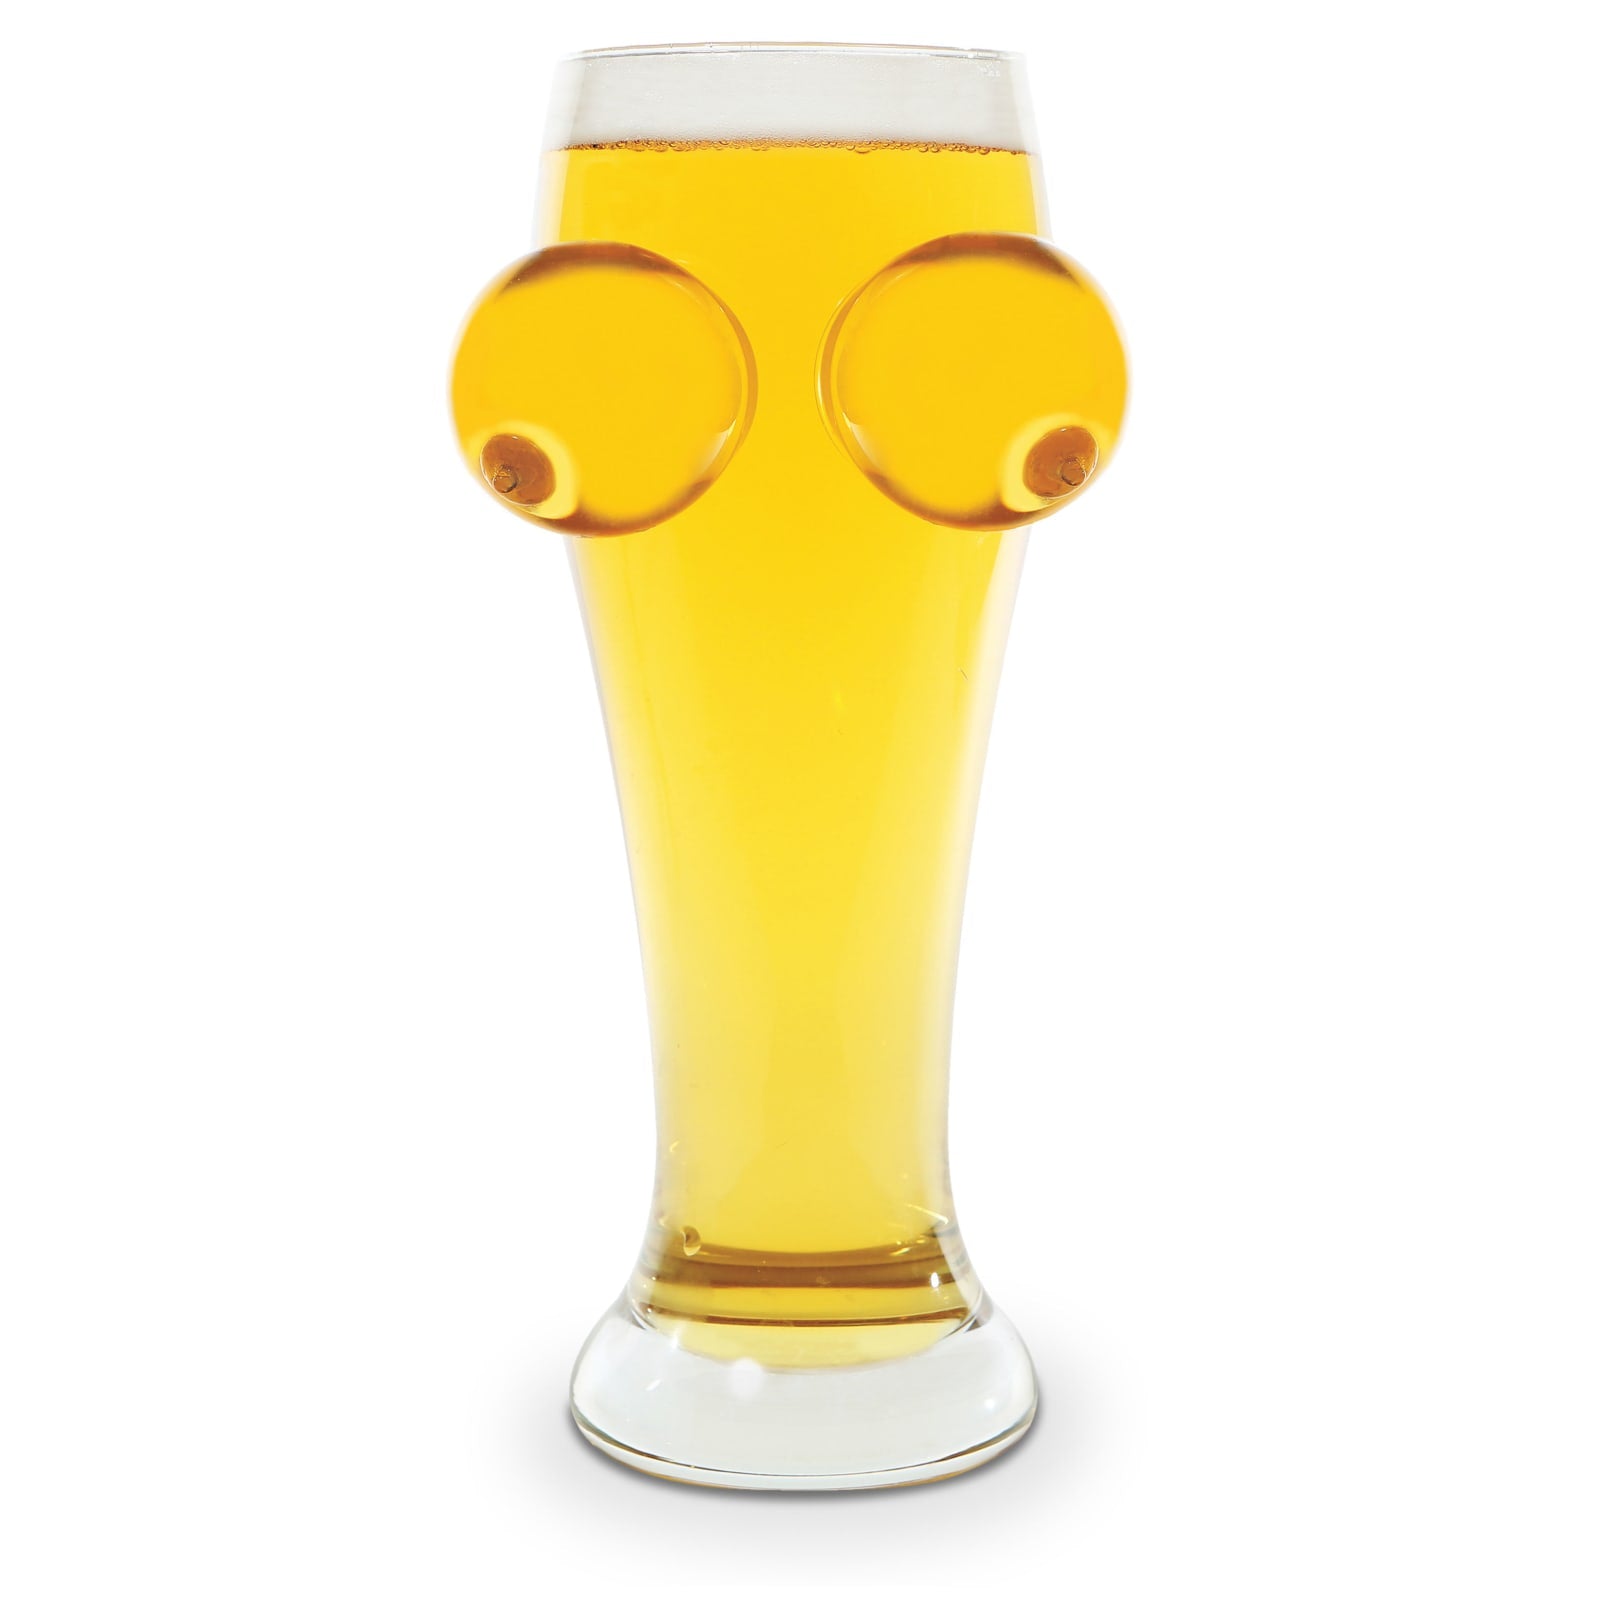 The Boobies N Beer Glass